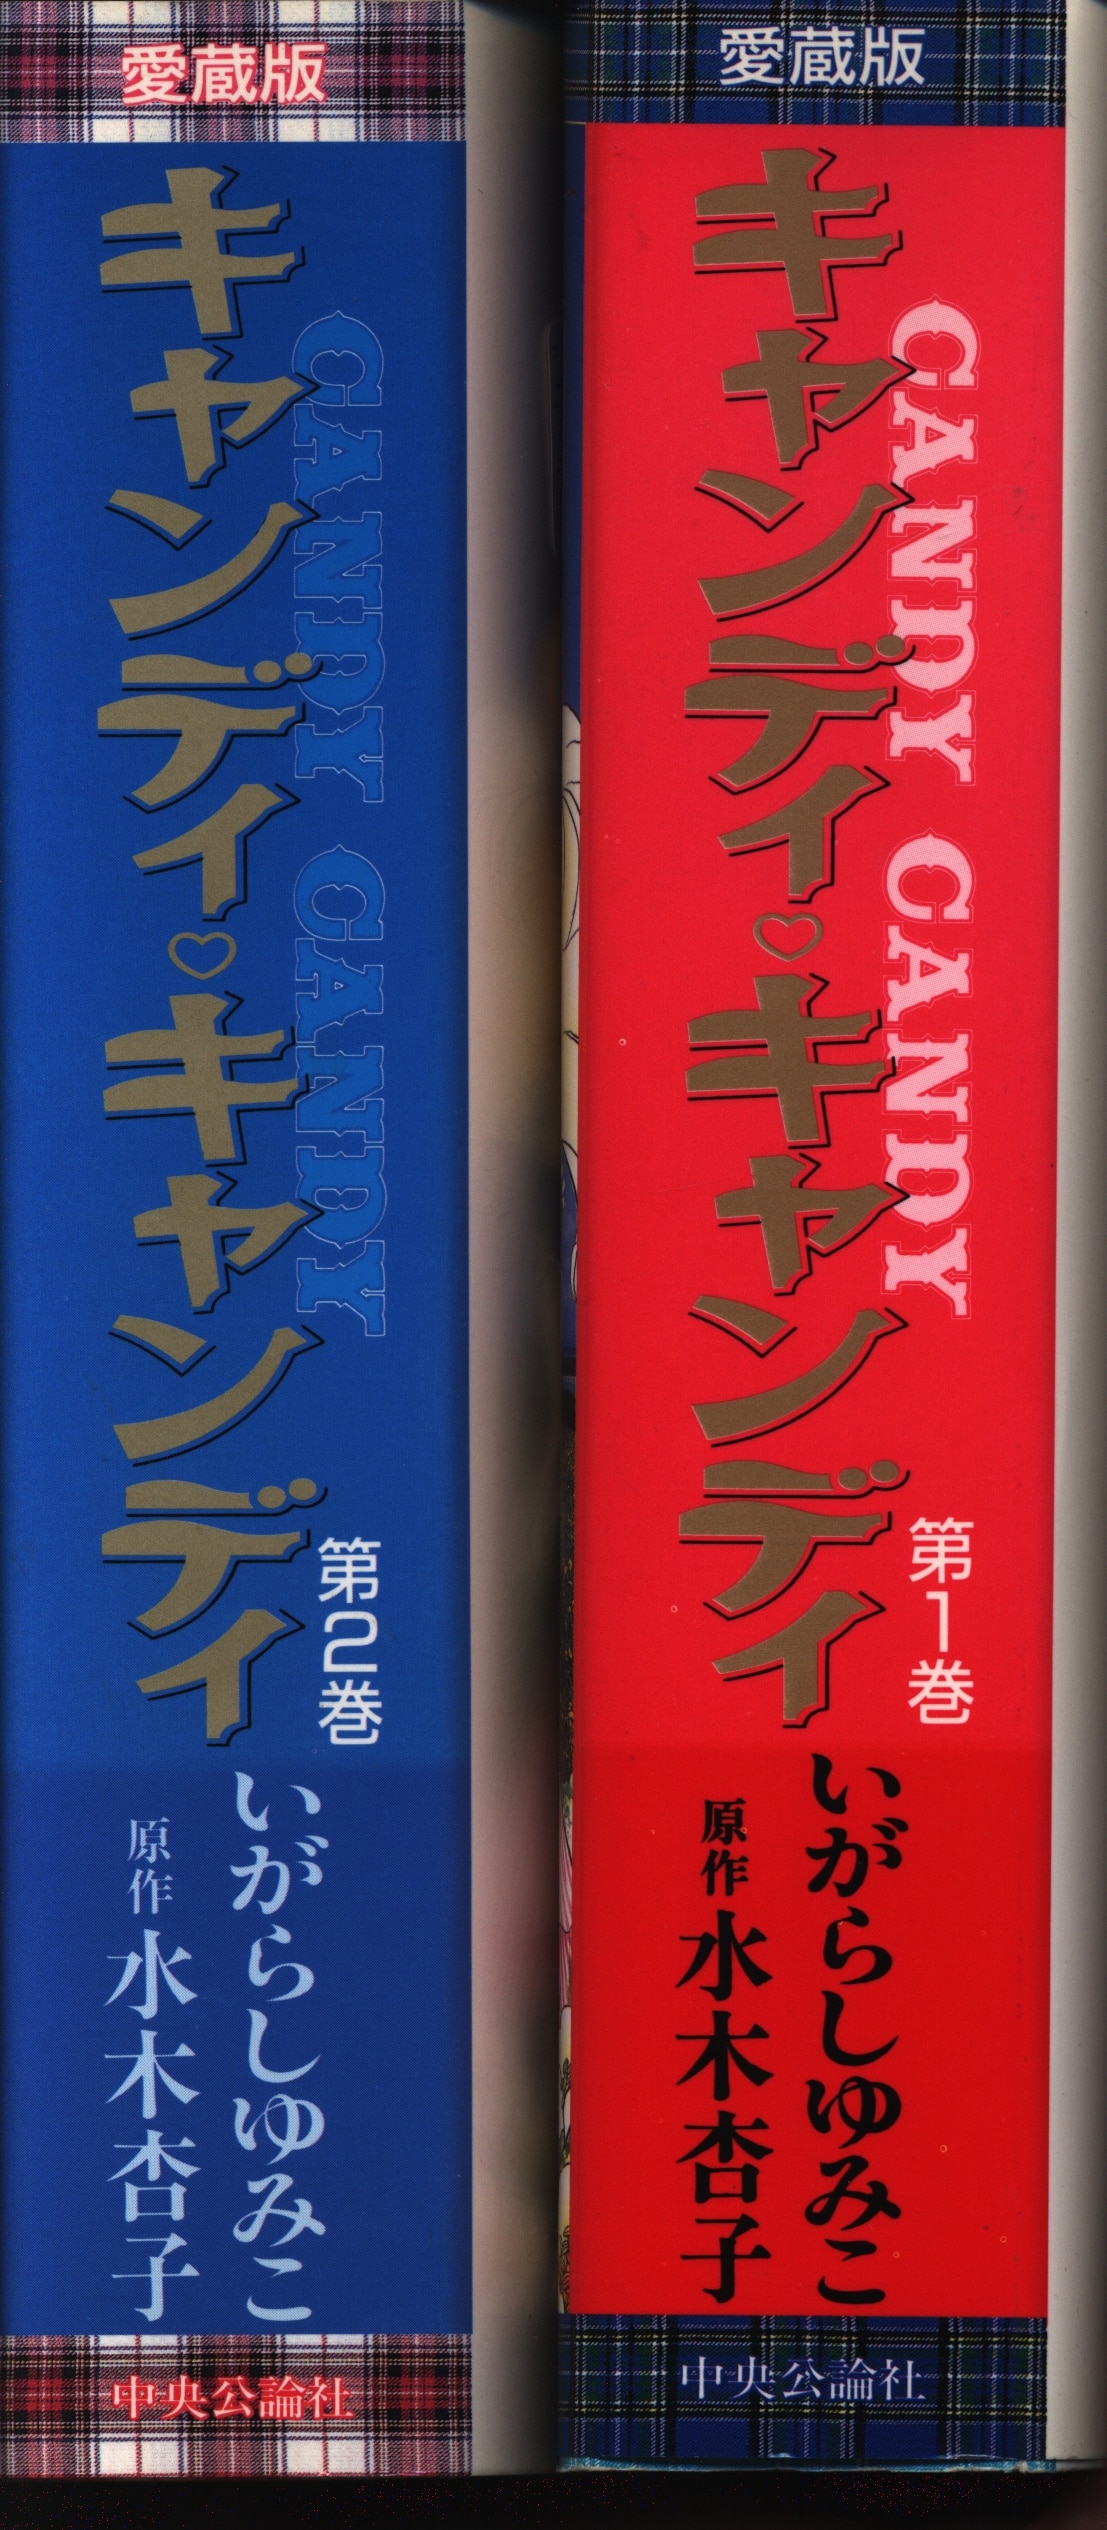 【講談社】愛蔵版・キャンディ♡キャンディ全2巻 / いがらしゆみこ